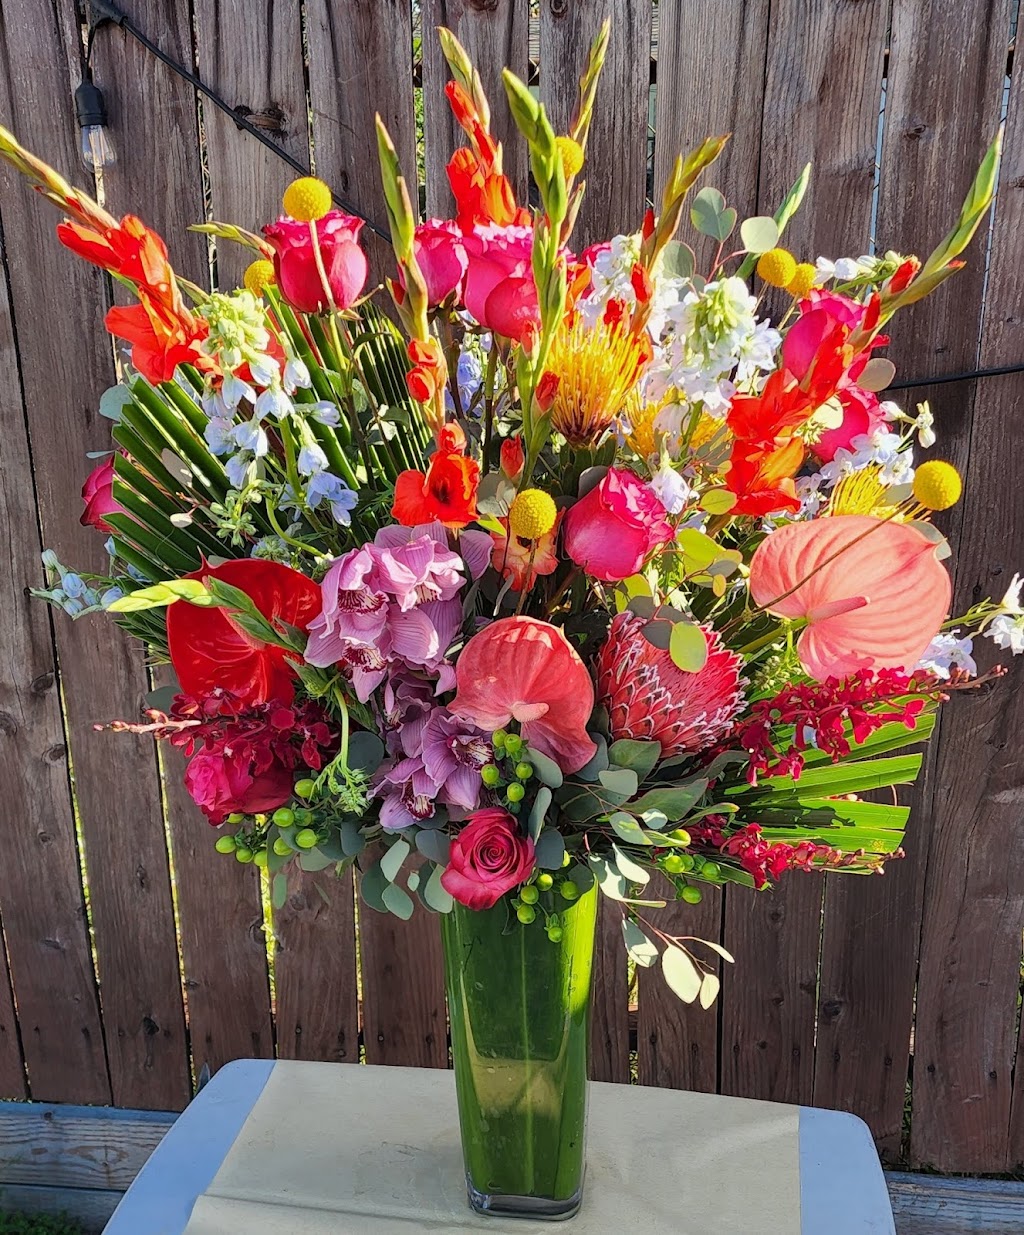 La catrina floral designs | 4257 S Hobart Blvd, Los Angeles, CA 90062 | Phone: (213) 317-8733